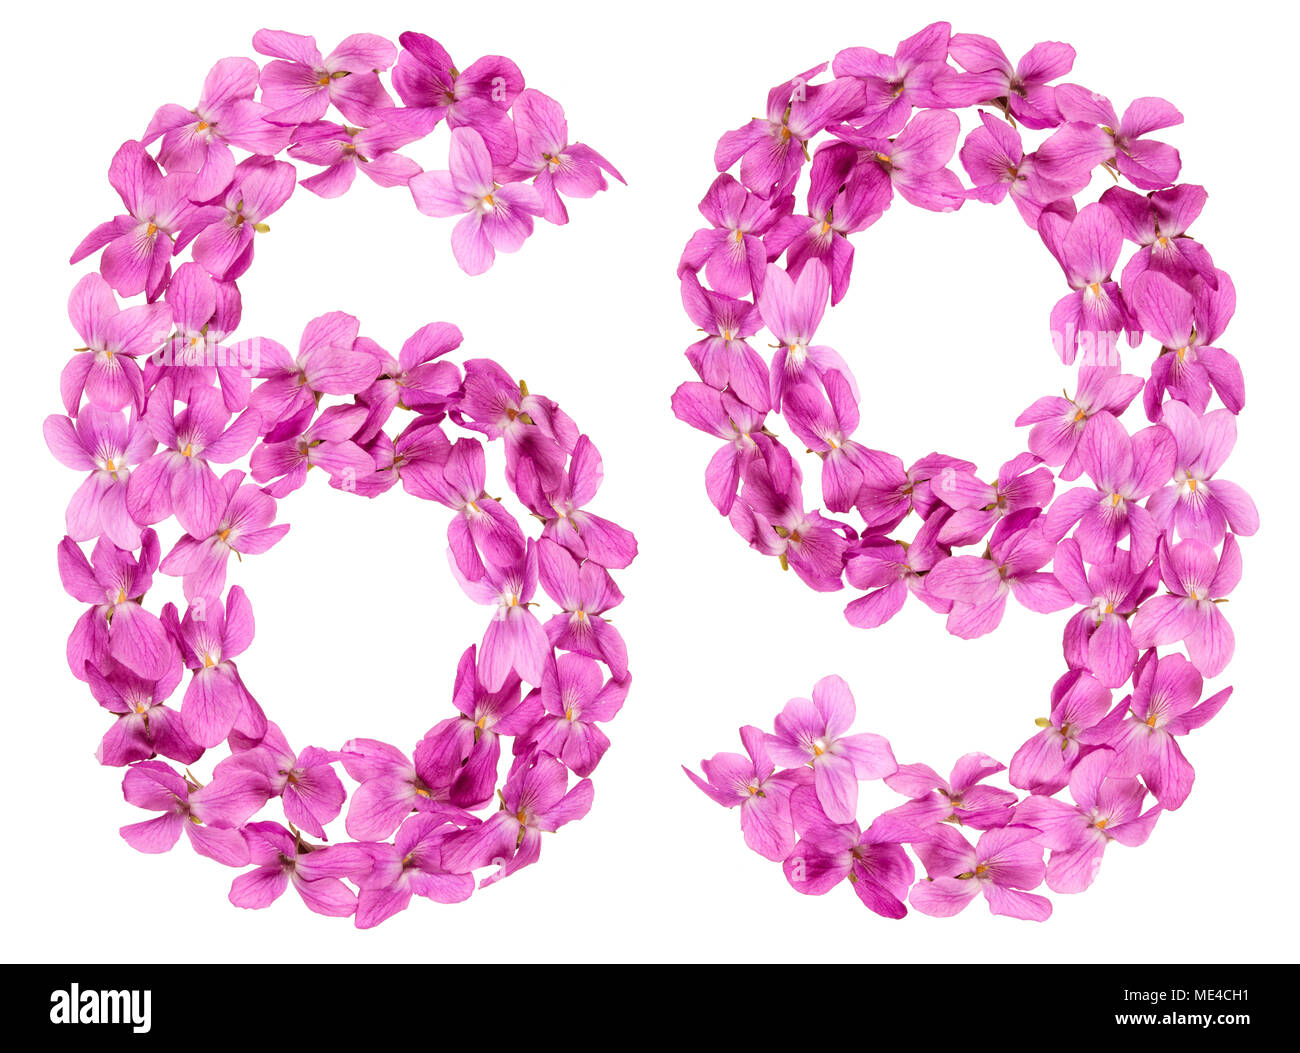 Numero arabo 69, sessanta nove, dai fiori di viola, isolato su sfondo bianco Foto Stock